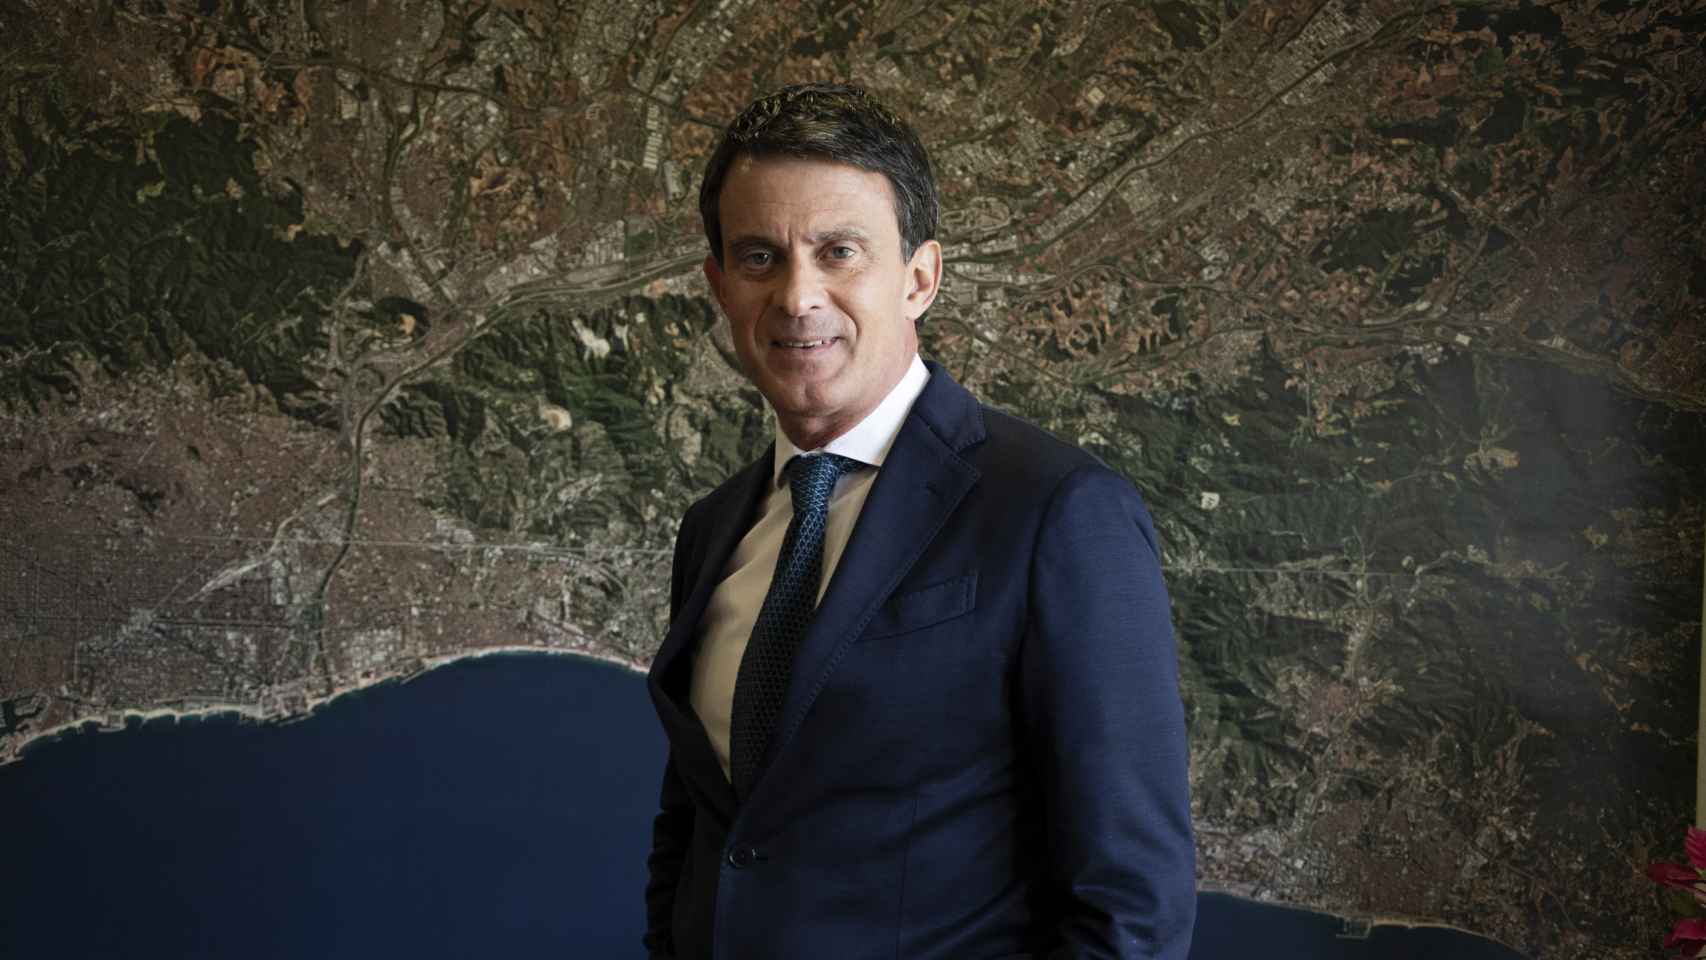 Manuel Valls, frente a una fotografía aérea de Barcelona en su oficina de campaña.